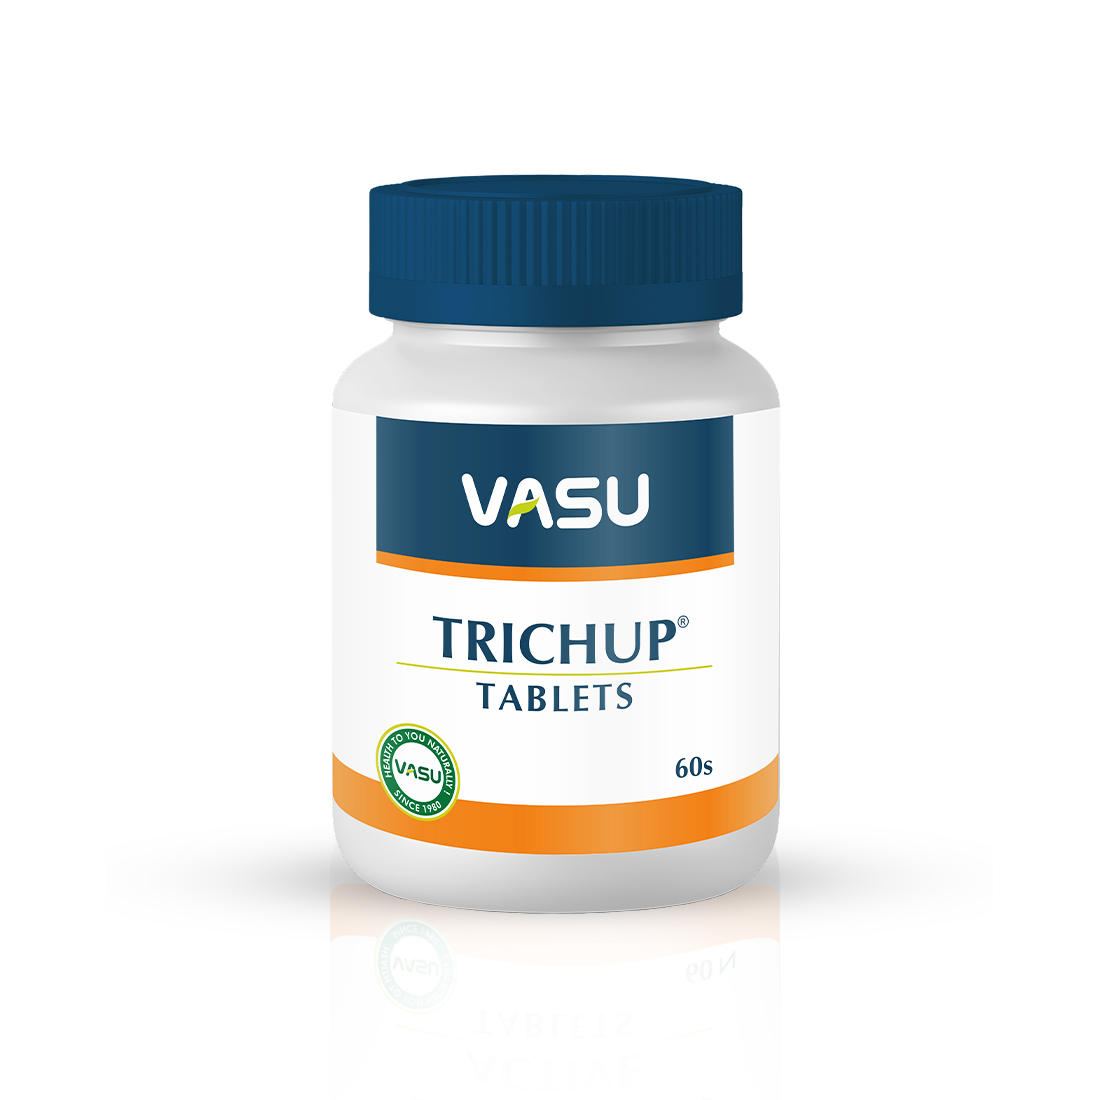 Buy Vasu Trichup Tablet at Best Price Online